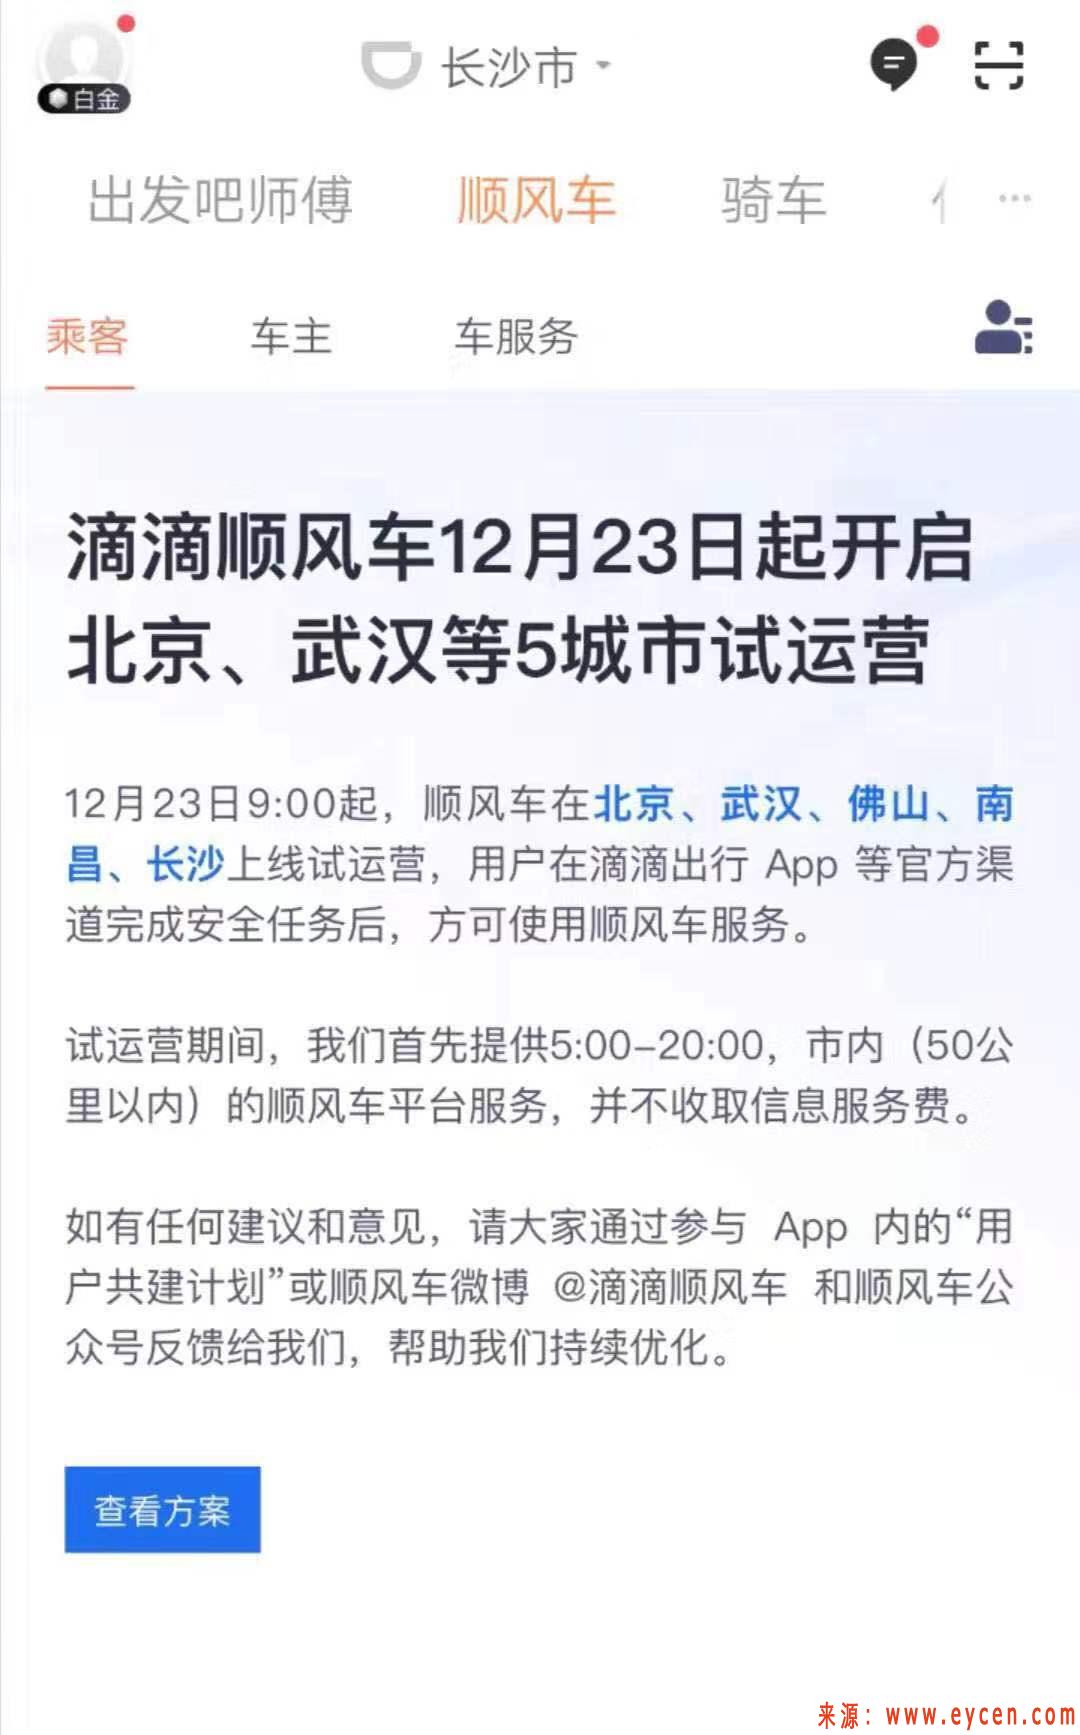 滴滴顺风车将于23日在北京、武汉等5市试运营-网约车指南